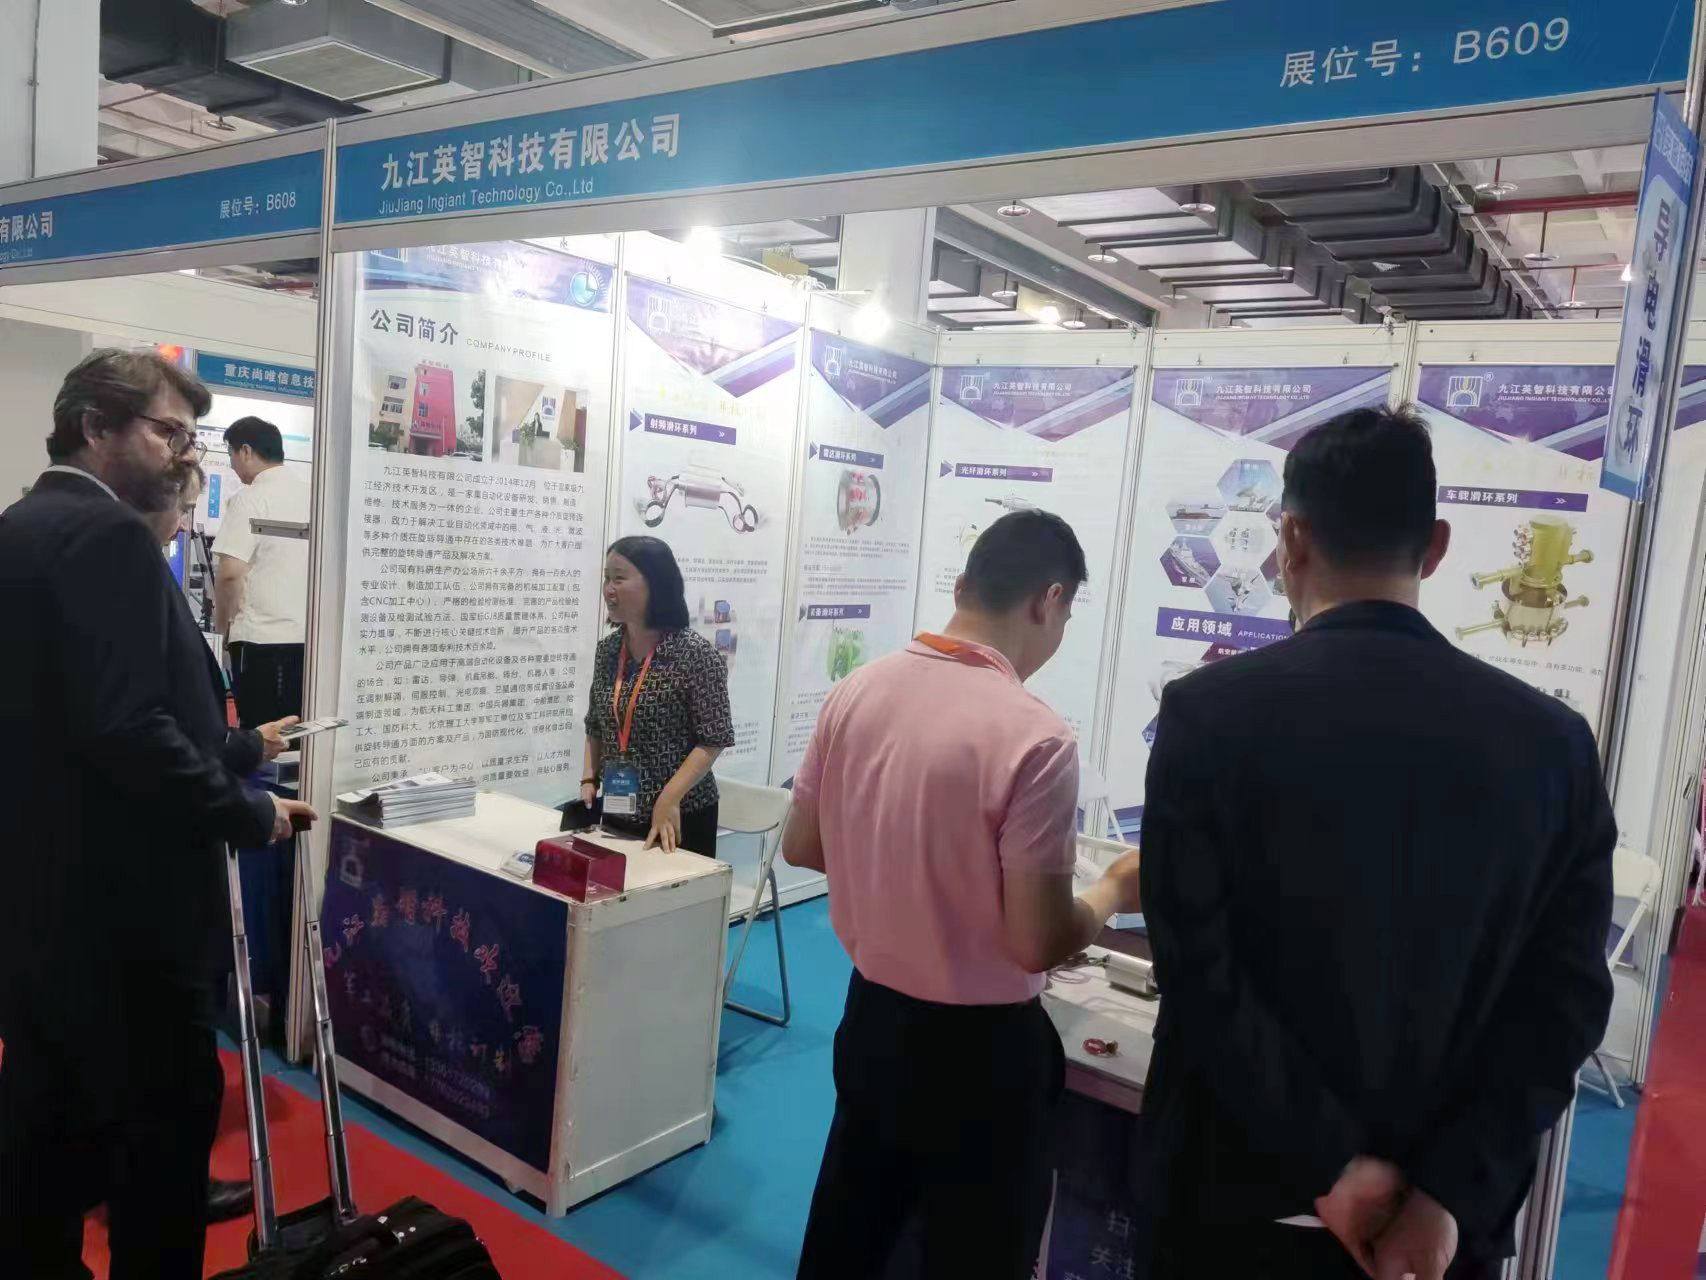 英智科技在第十二届中国国防信息化装备与技术博览会与客户沟通